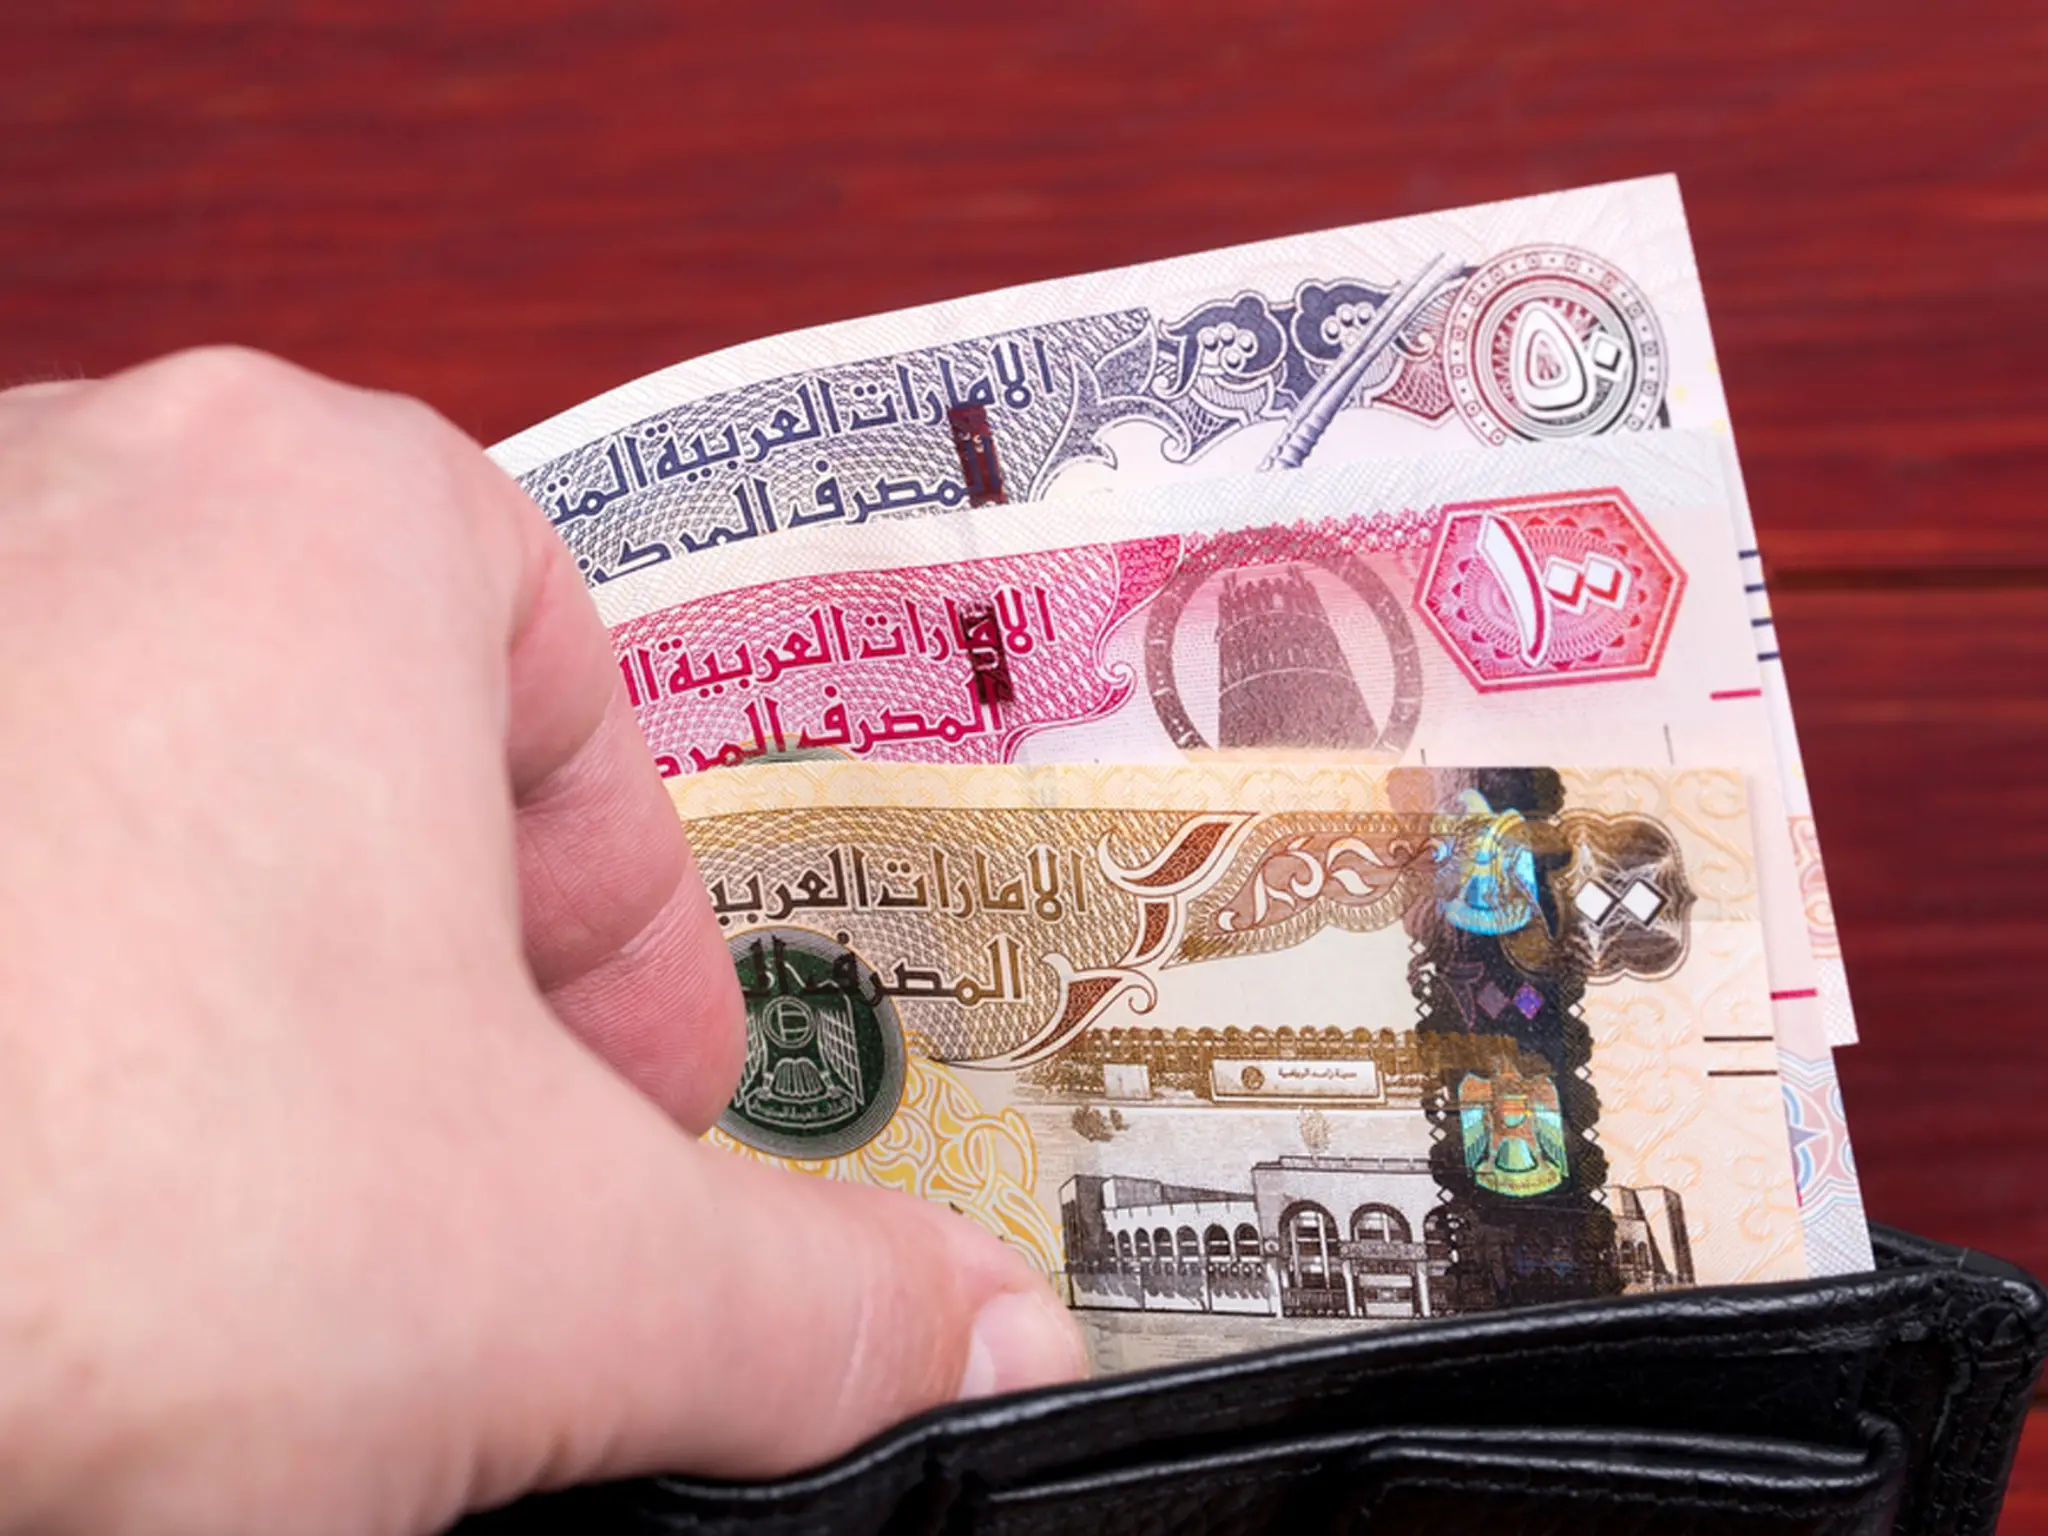 الإمارات تعلن حظر استخدام بعض المواد الشائعة وتغرم المخالفين 2000 درهم